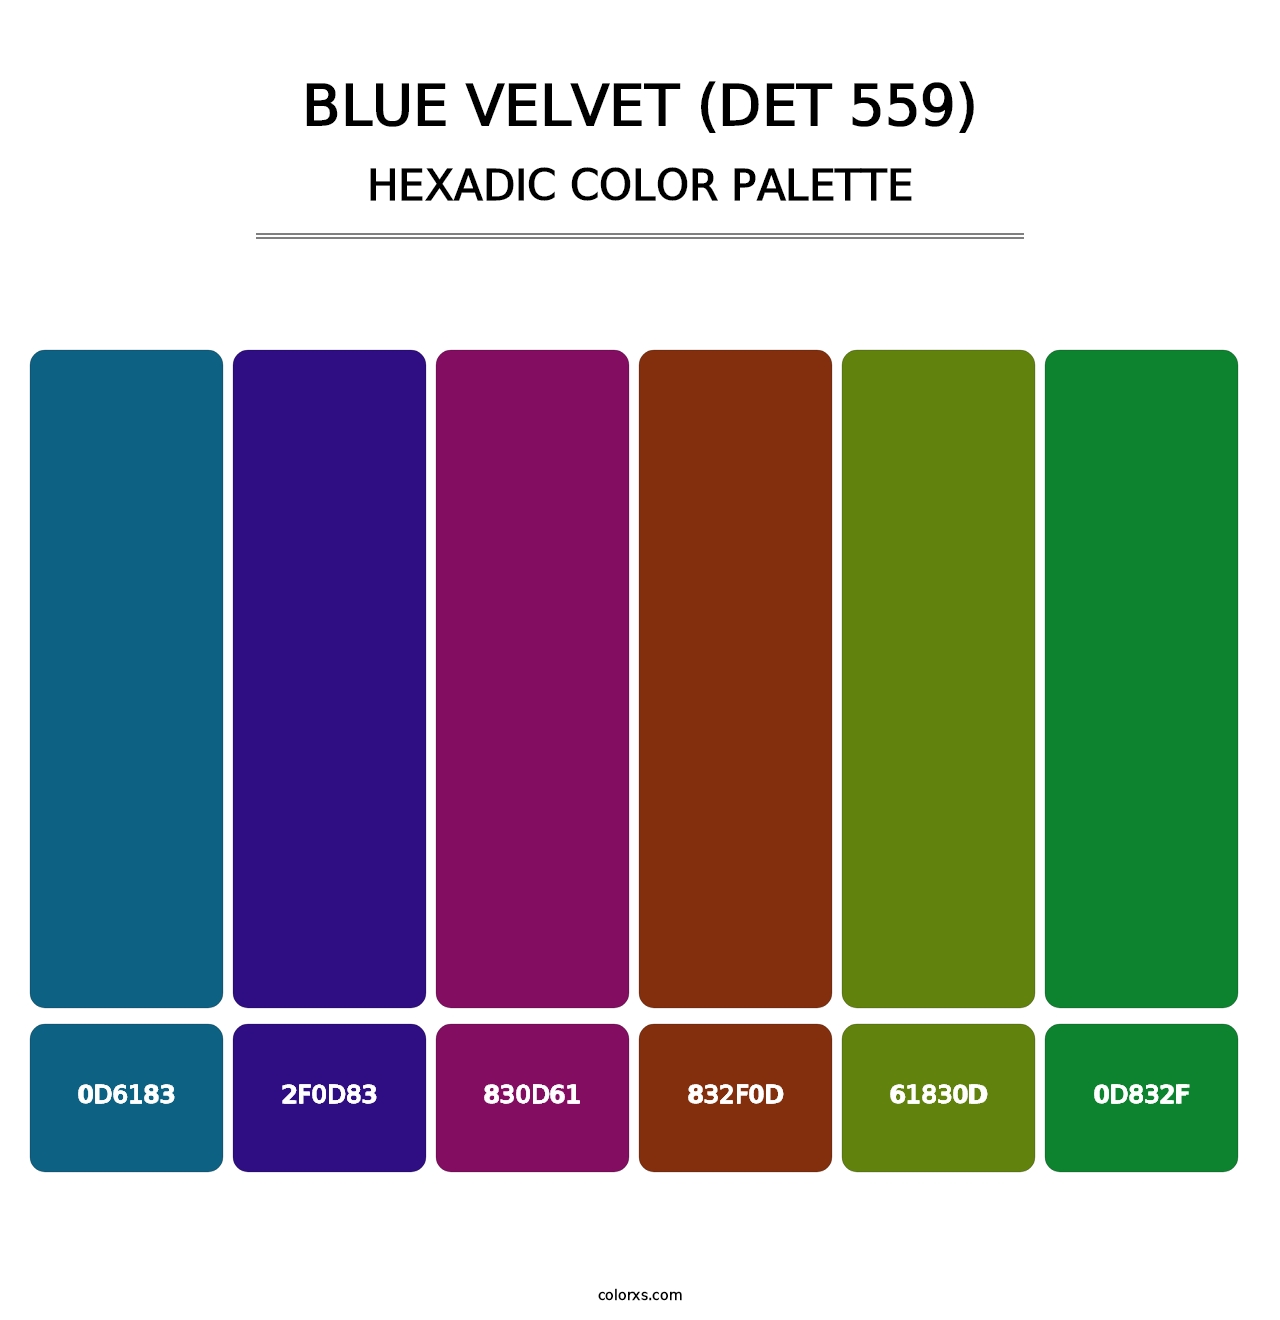 Blue Velvet (DET 559) - Hexadic Color Palette